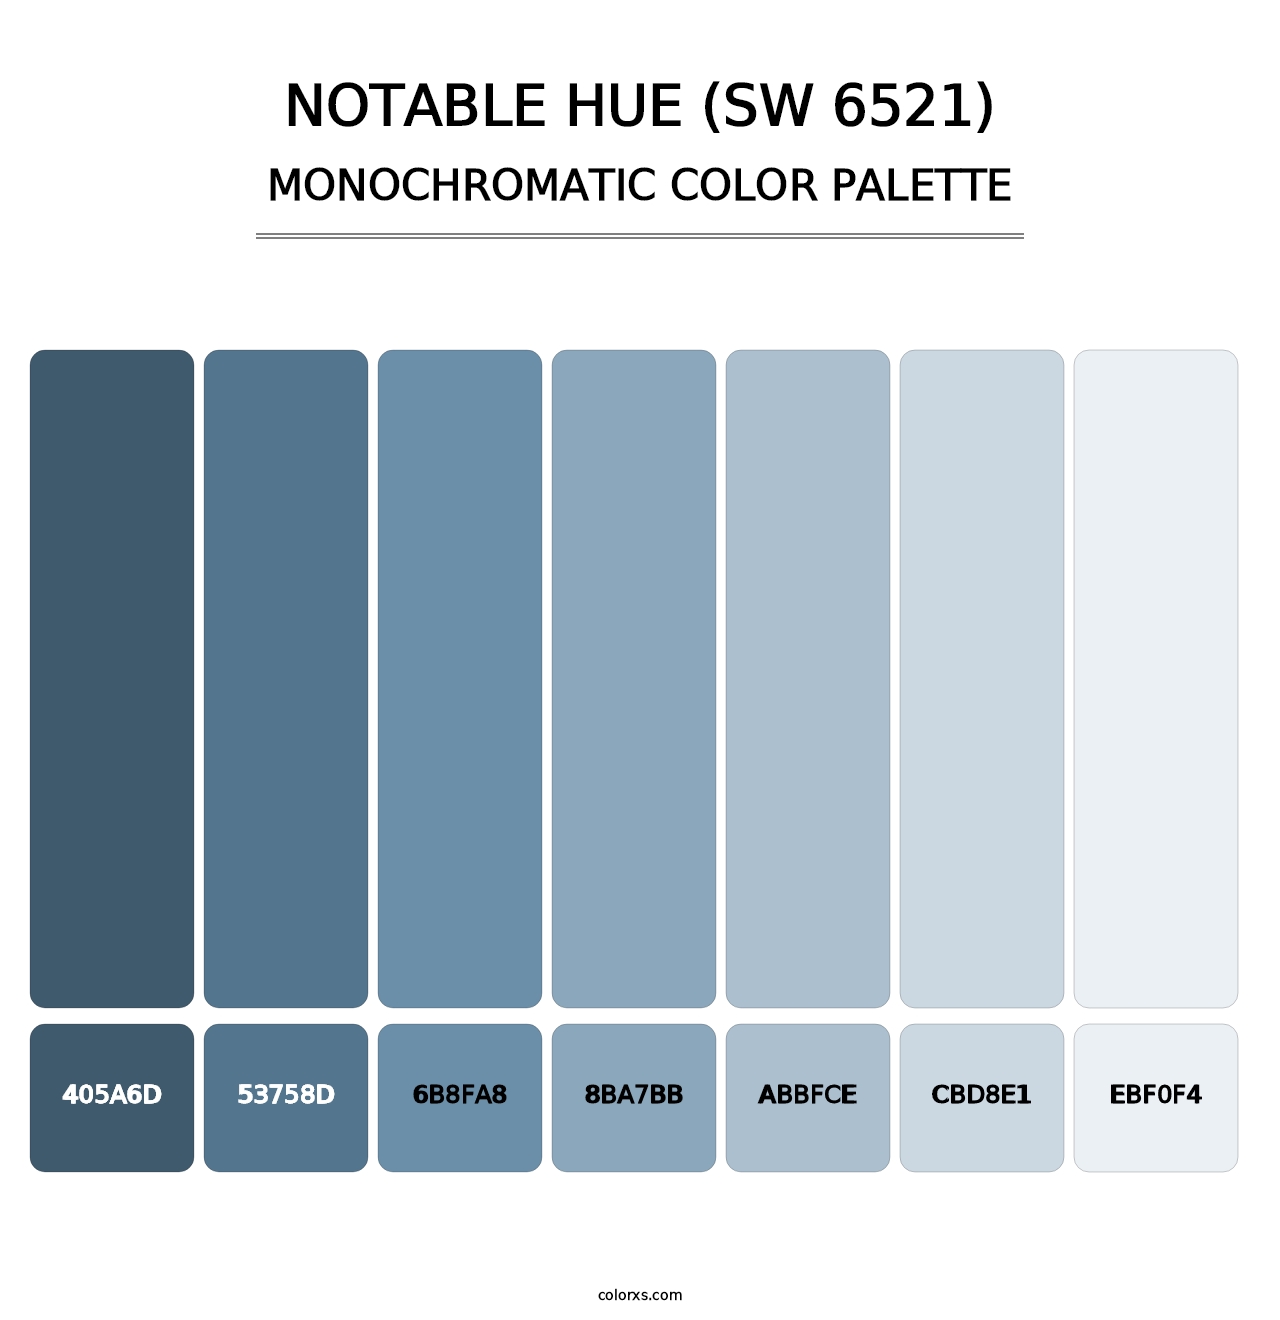 Notable Hue (SW 6521) - Monochromatic Color Palette